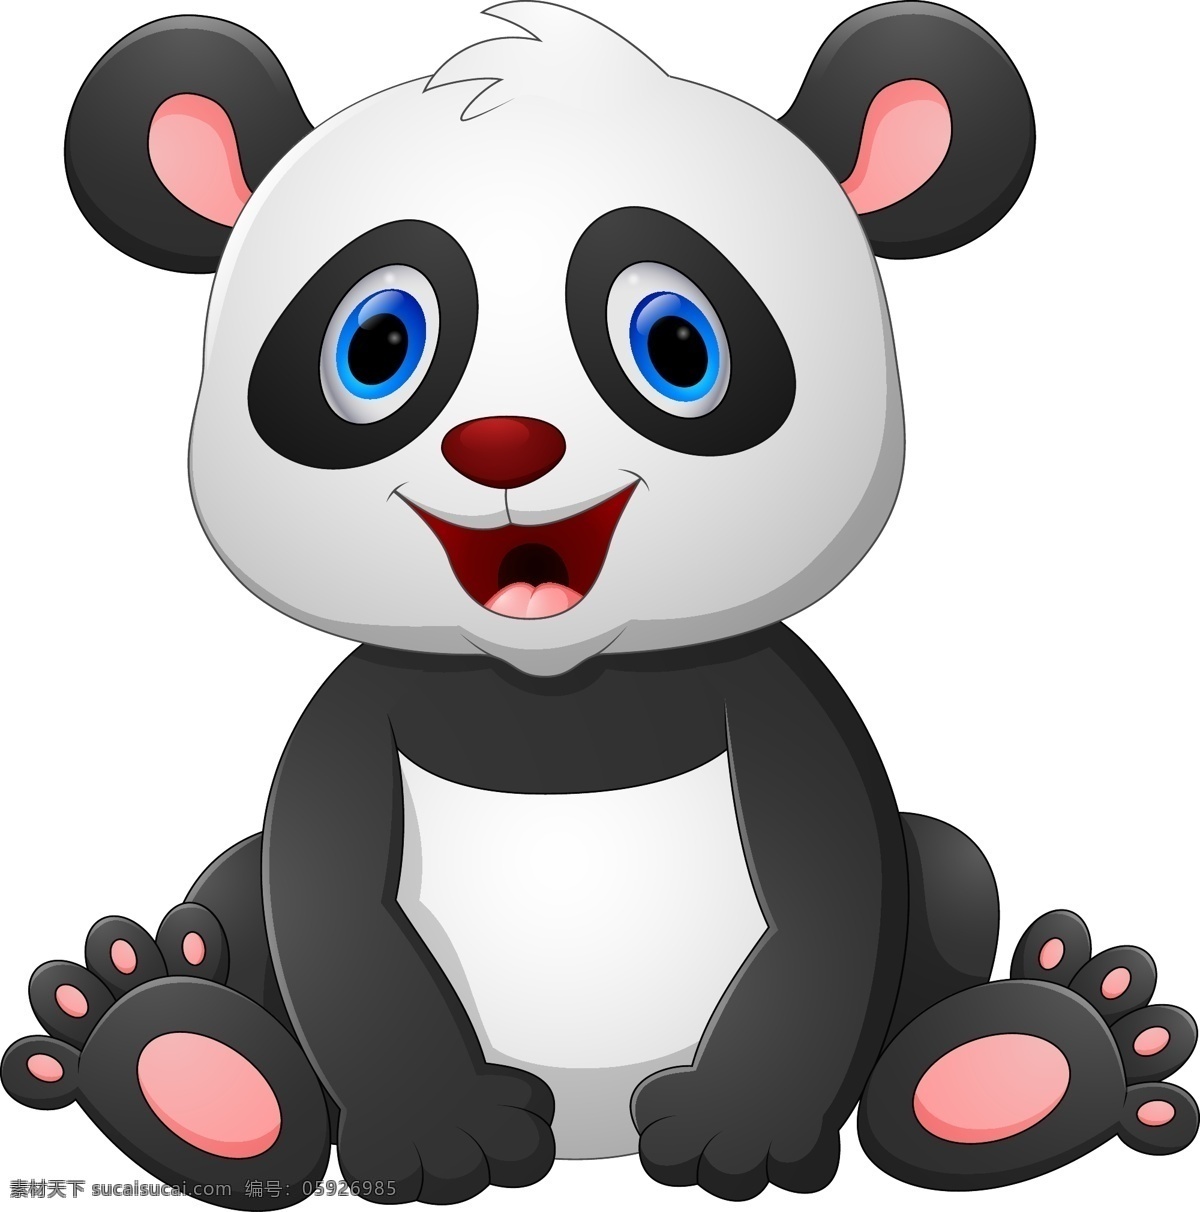 坐在 地上 可爱 大熊猫 矢量 卡通动物 可爱动物 国宝 野生动物 卡通形象 动物漫画 插画 文化艺术 绘画书法